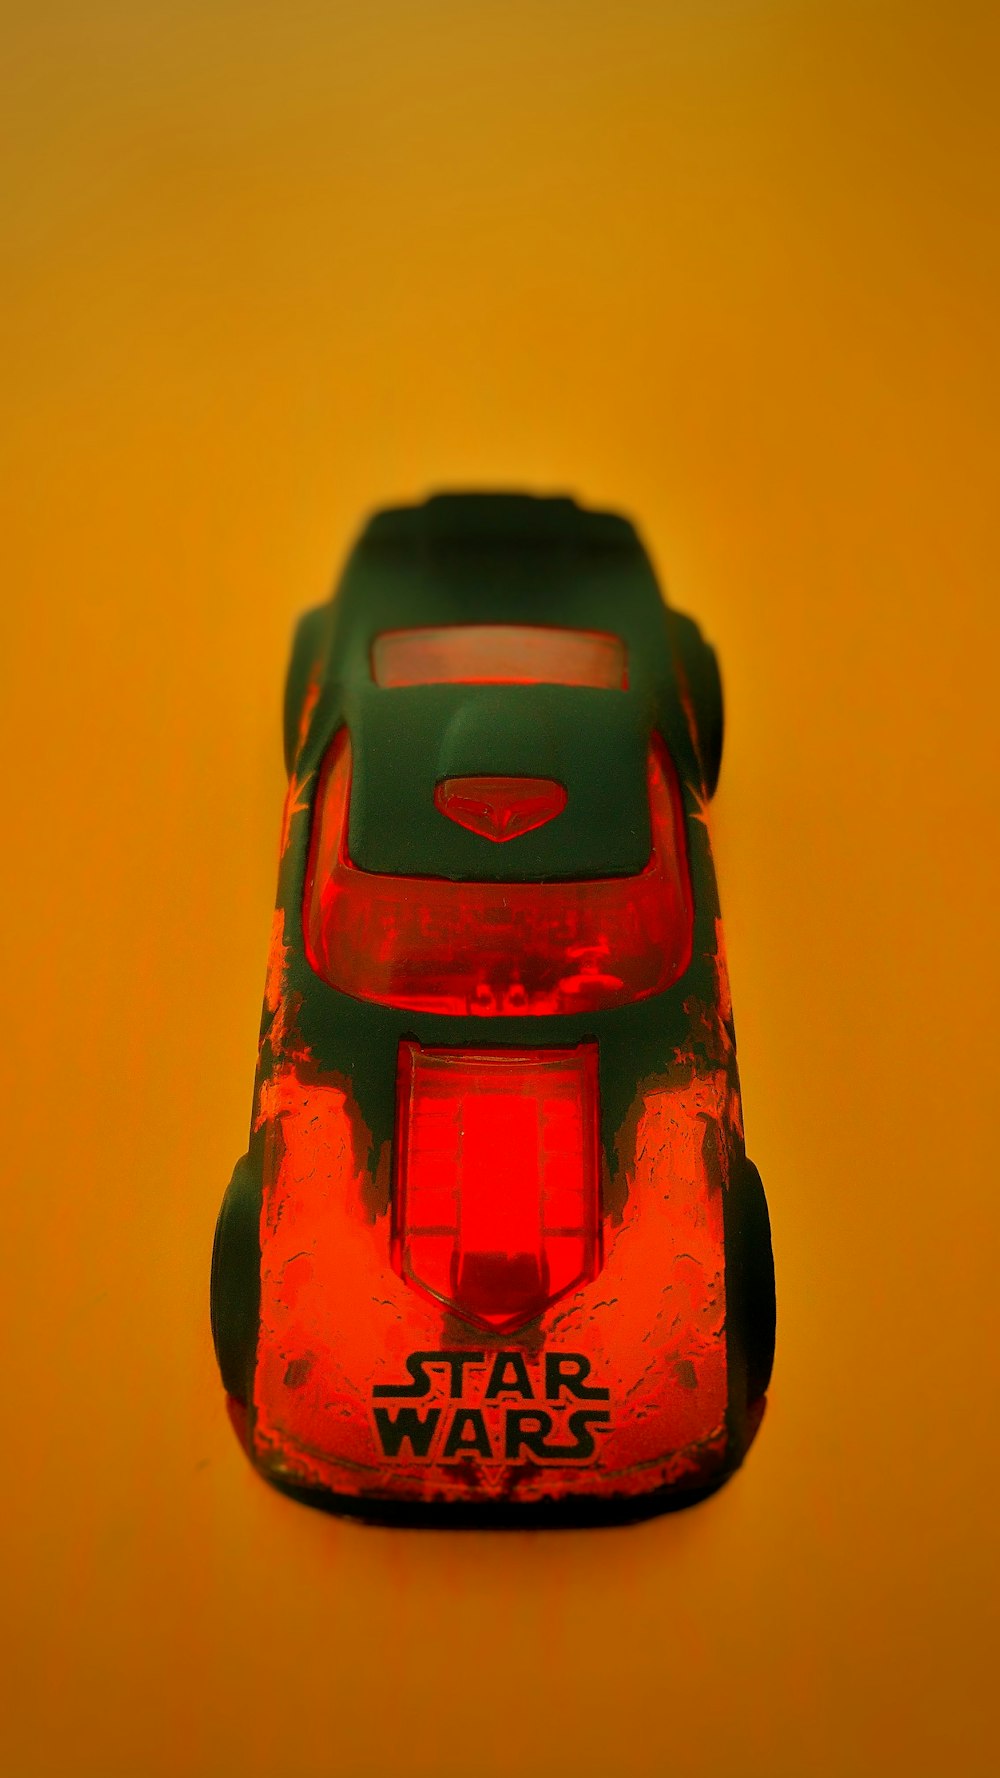 A Star Wars car on an orange surface.